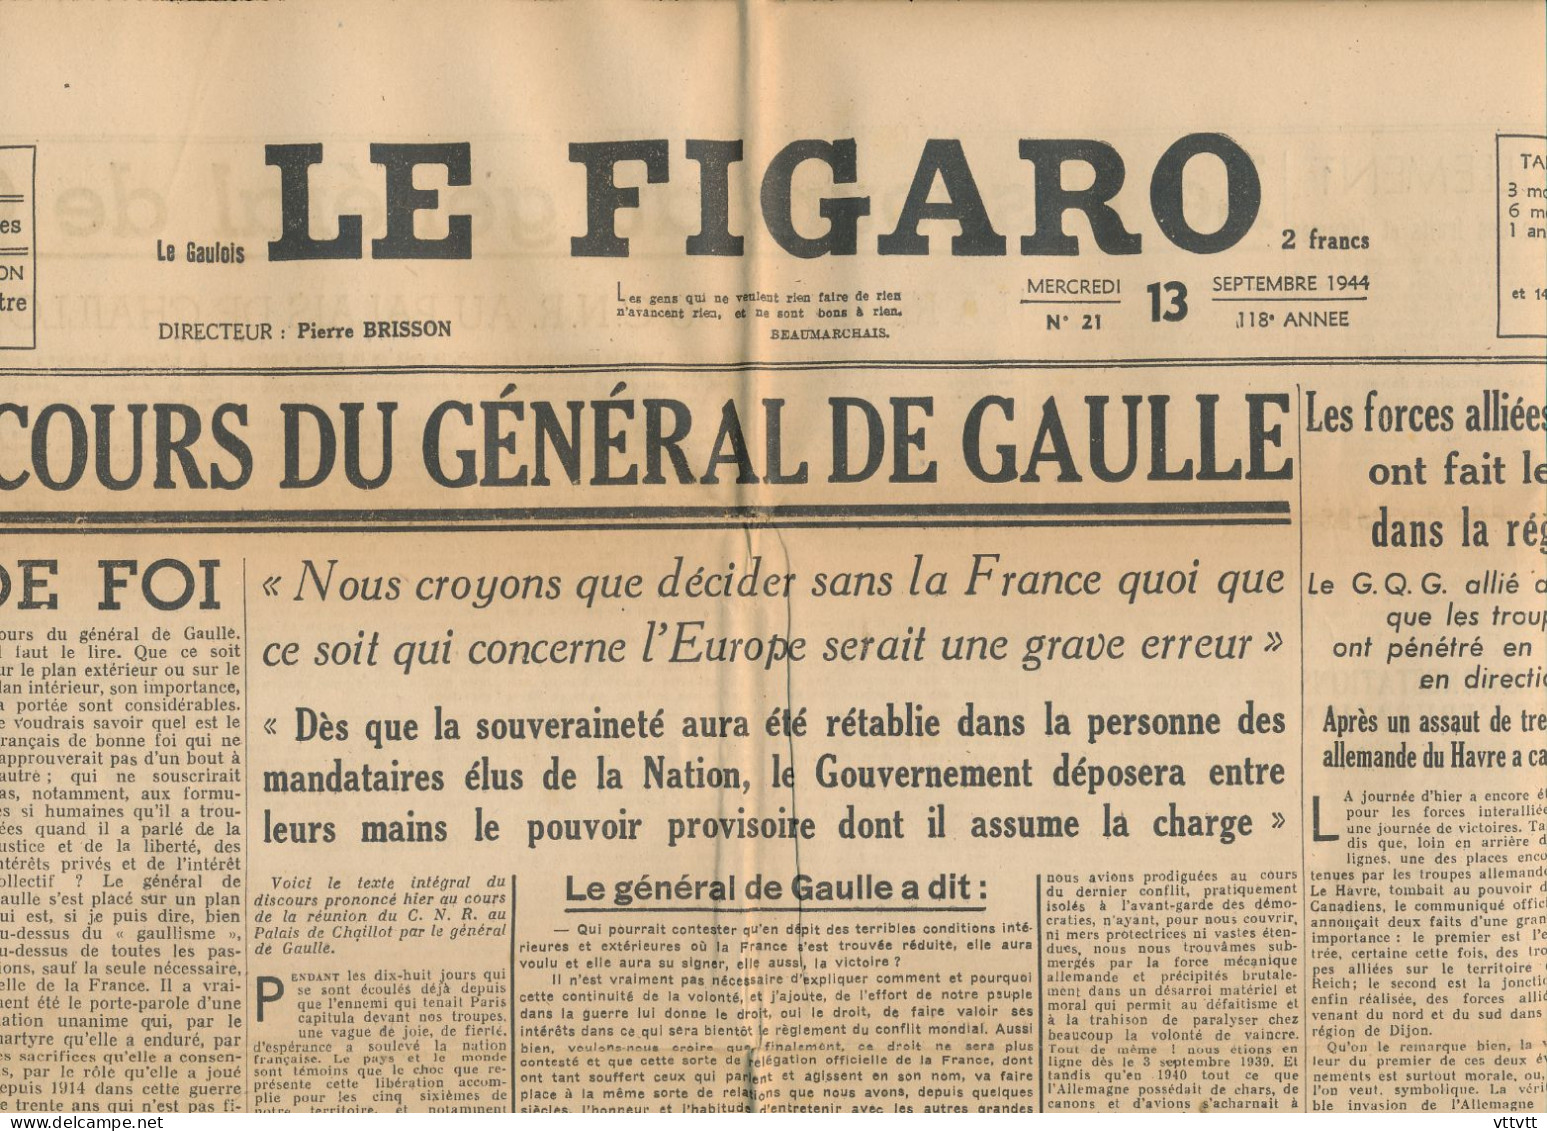 LE FIGARO, Mercredi 13 Septembre 1944, N° 21, Discours Du Général De Gaulle, Jonction Forces Alliées, Dijon, Le Havre... - Testi Generali